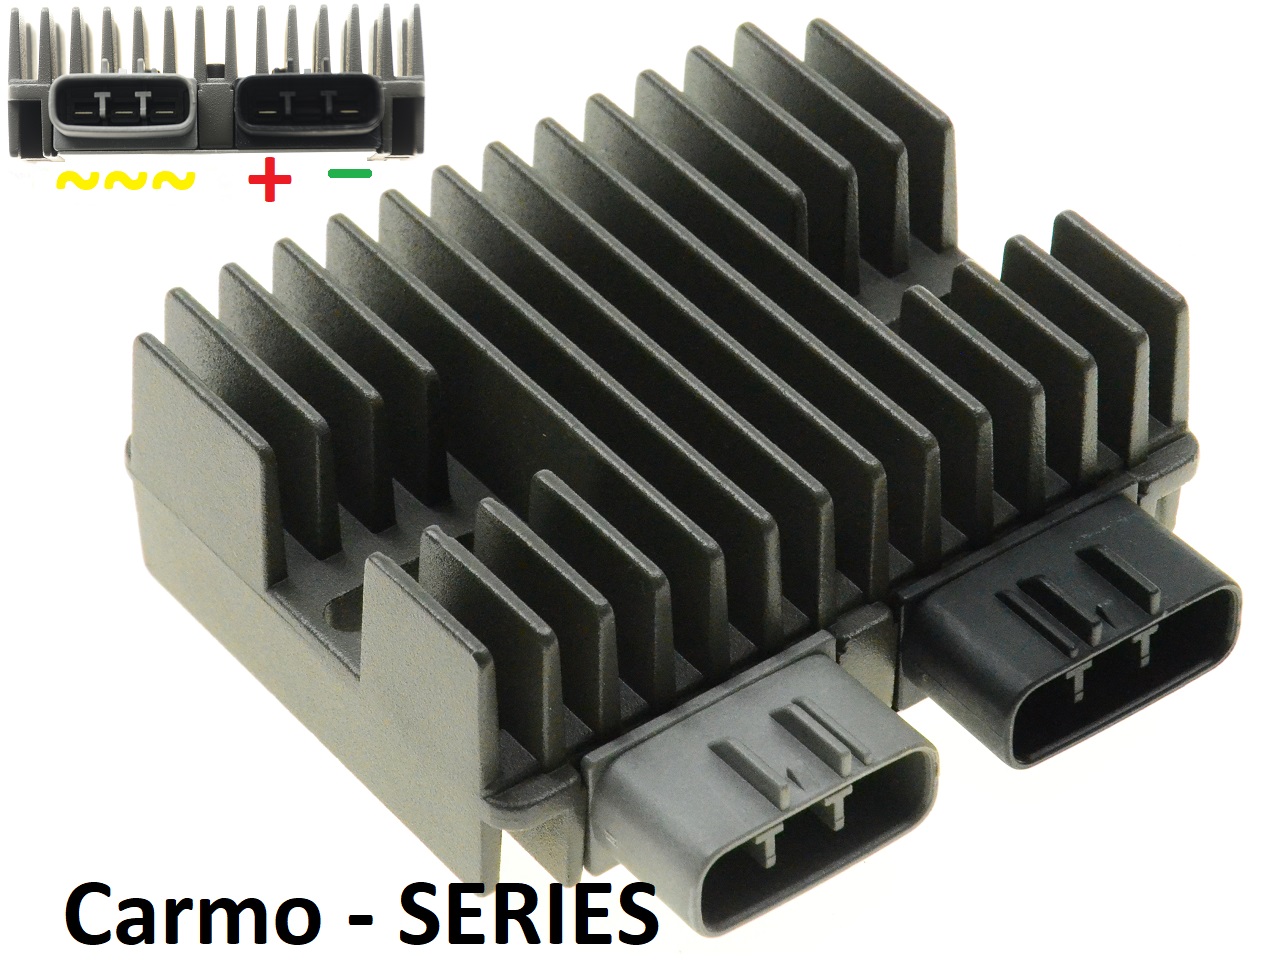 CARR5925-SERIE - MOSFET SERIE SERIES Raddrizzatore del regolatore di tensione (migliorato SH847) piace compu-fire